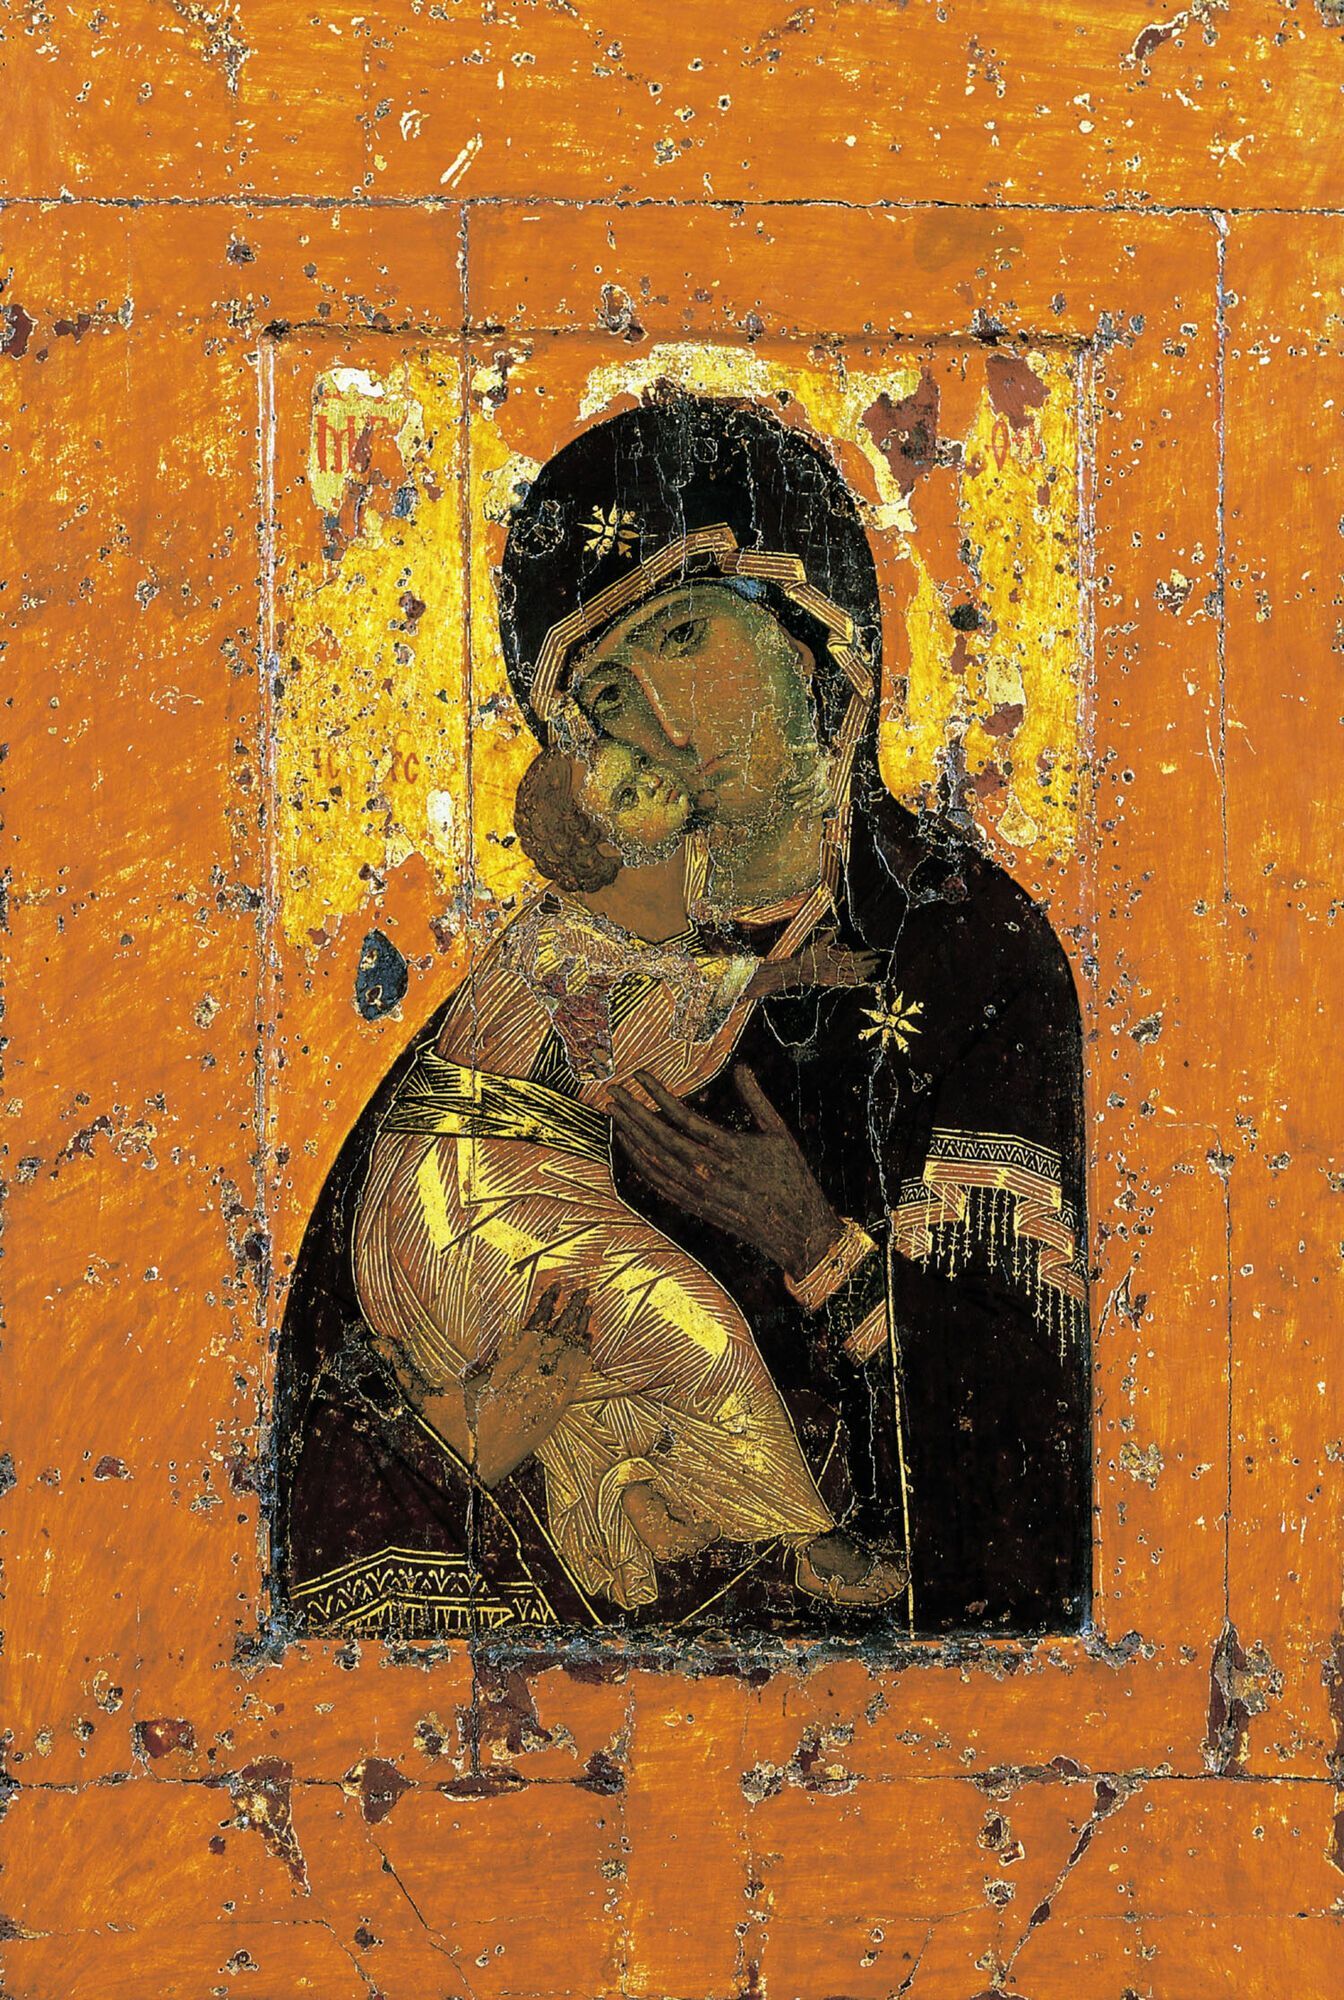 Владимирская икона Божией Матери попала на Русь из Византии около 1130 года как подарок святому киевскому князю Мстиславу Владимировичу